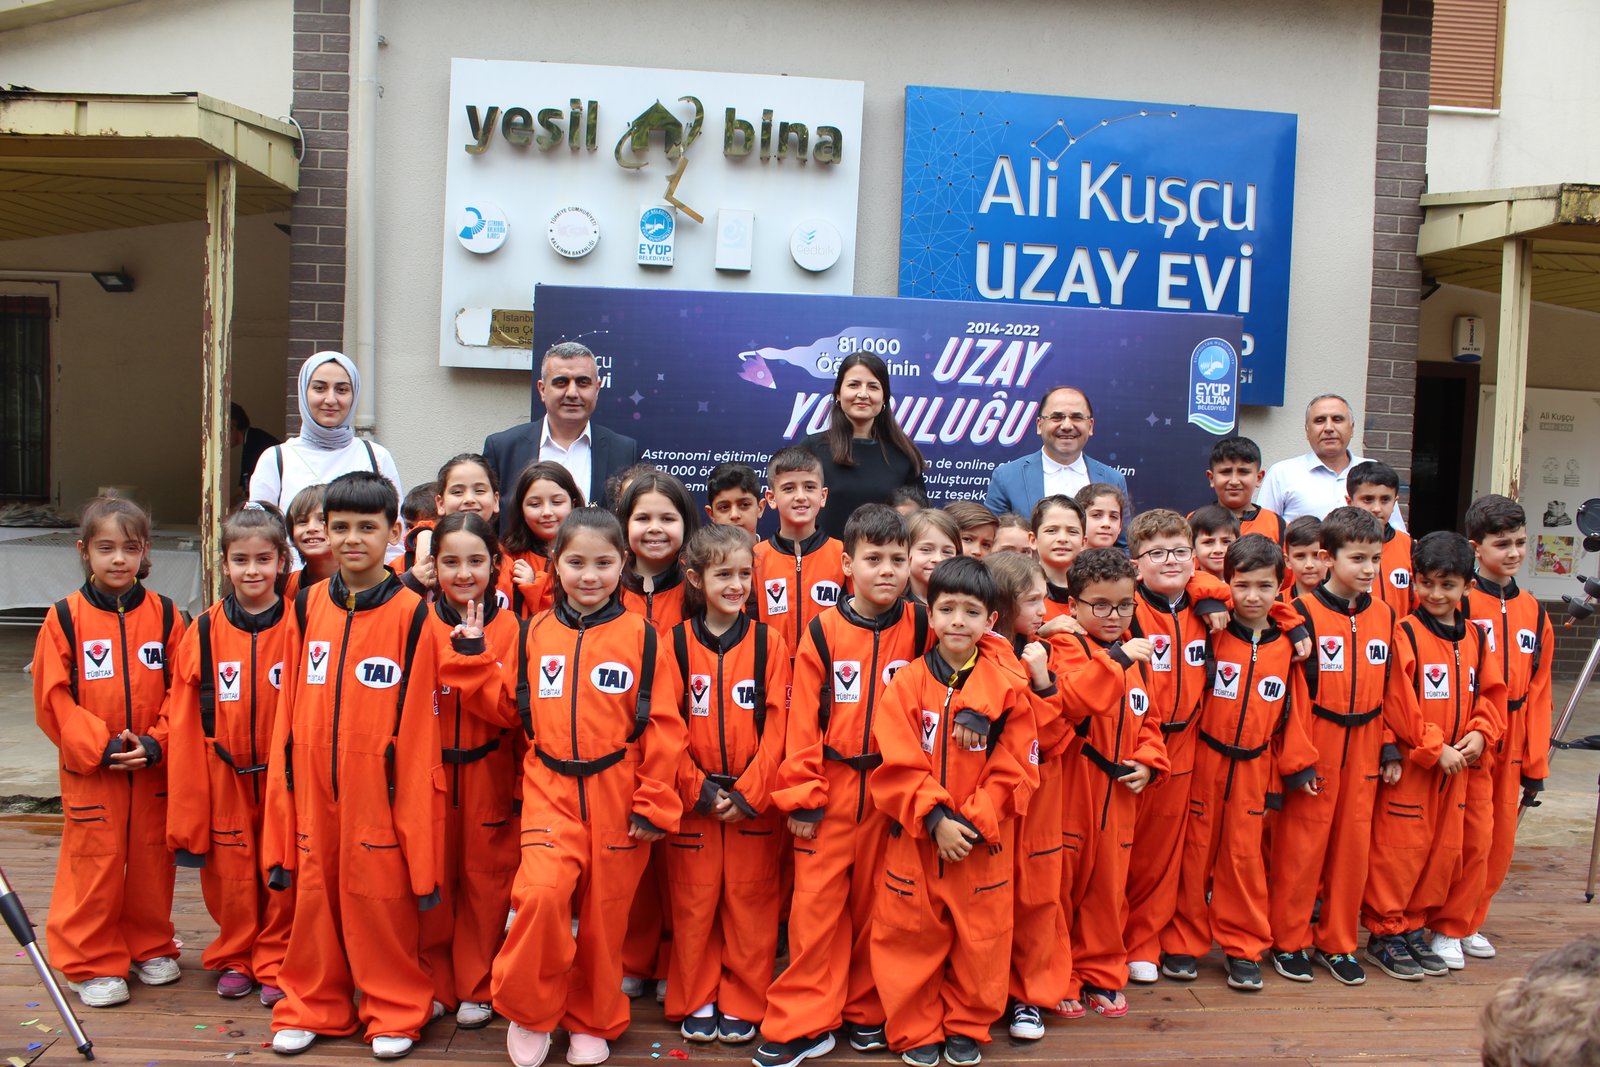 Ali Kuşçu Uzay Evi'nde 81 bin öğrencinin uzay yolculuğu